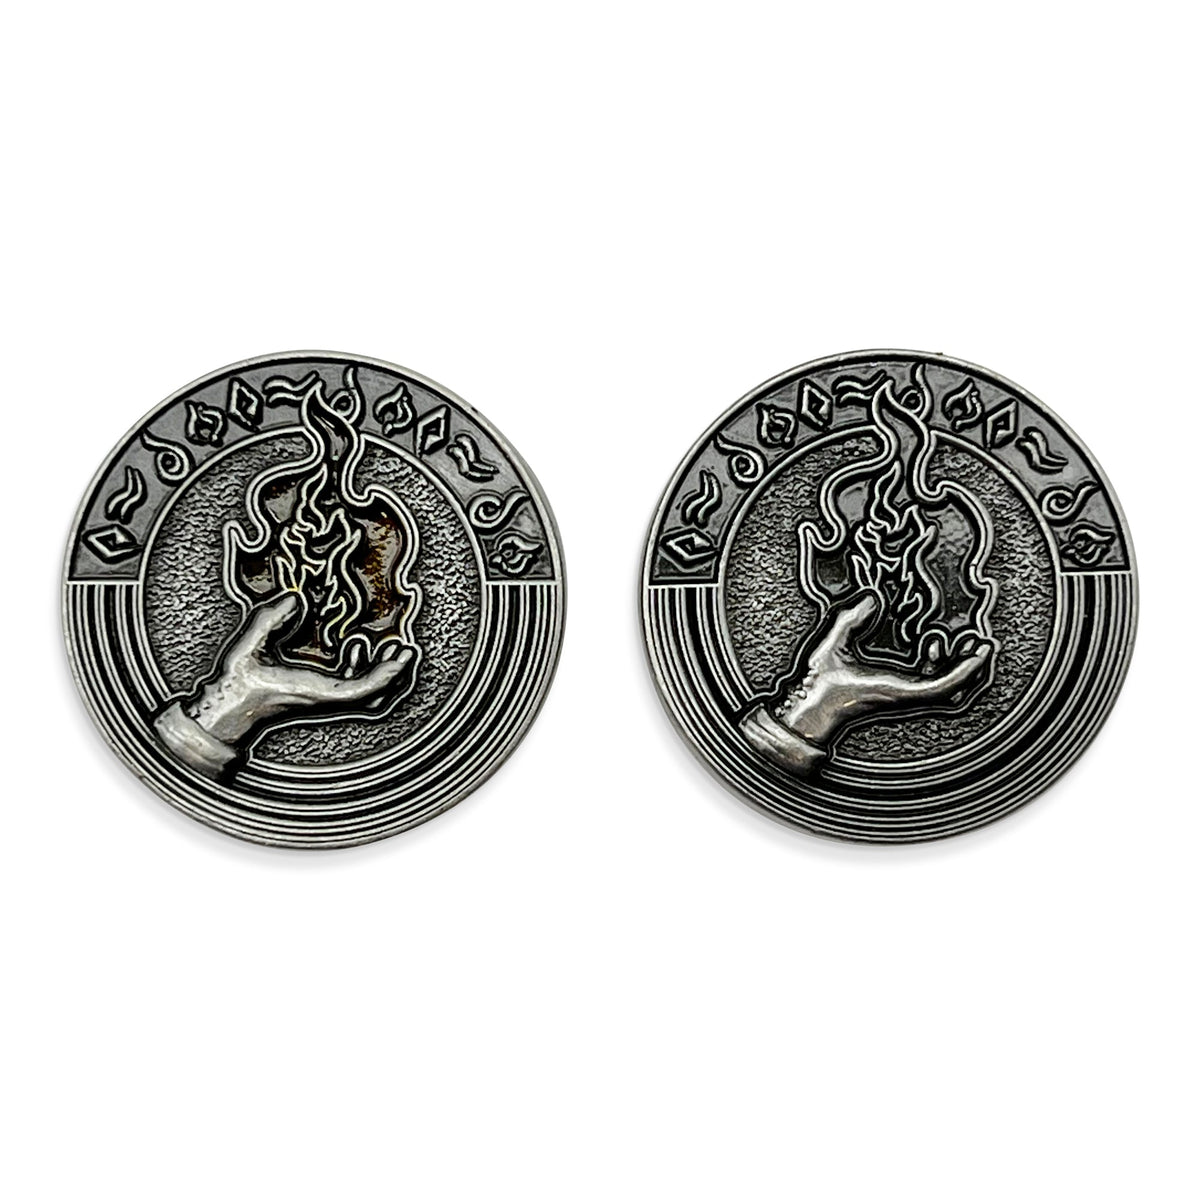 Profession Coins - Sorcerer Metal Coins Set of 10 - NOR 03416